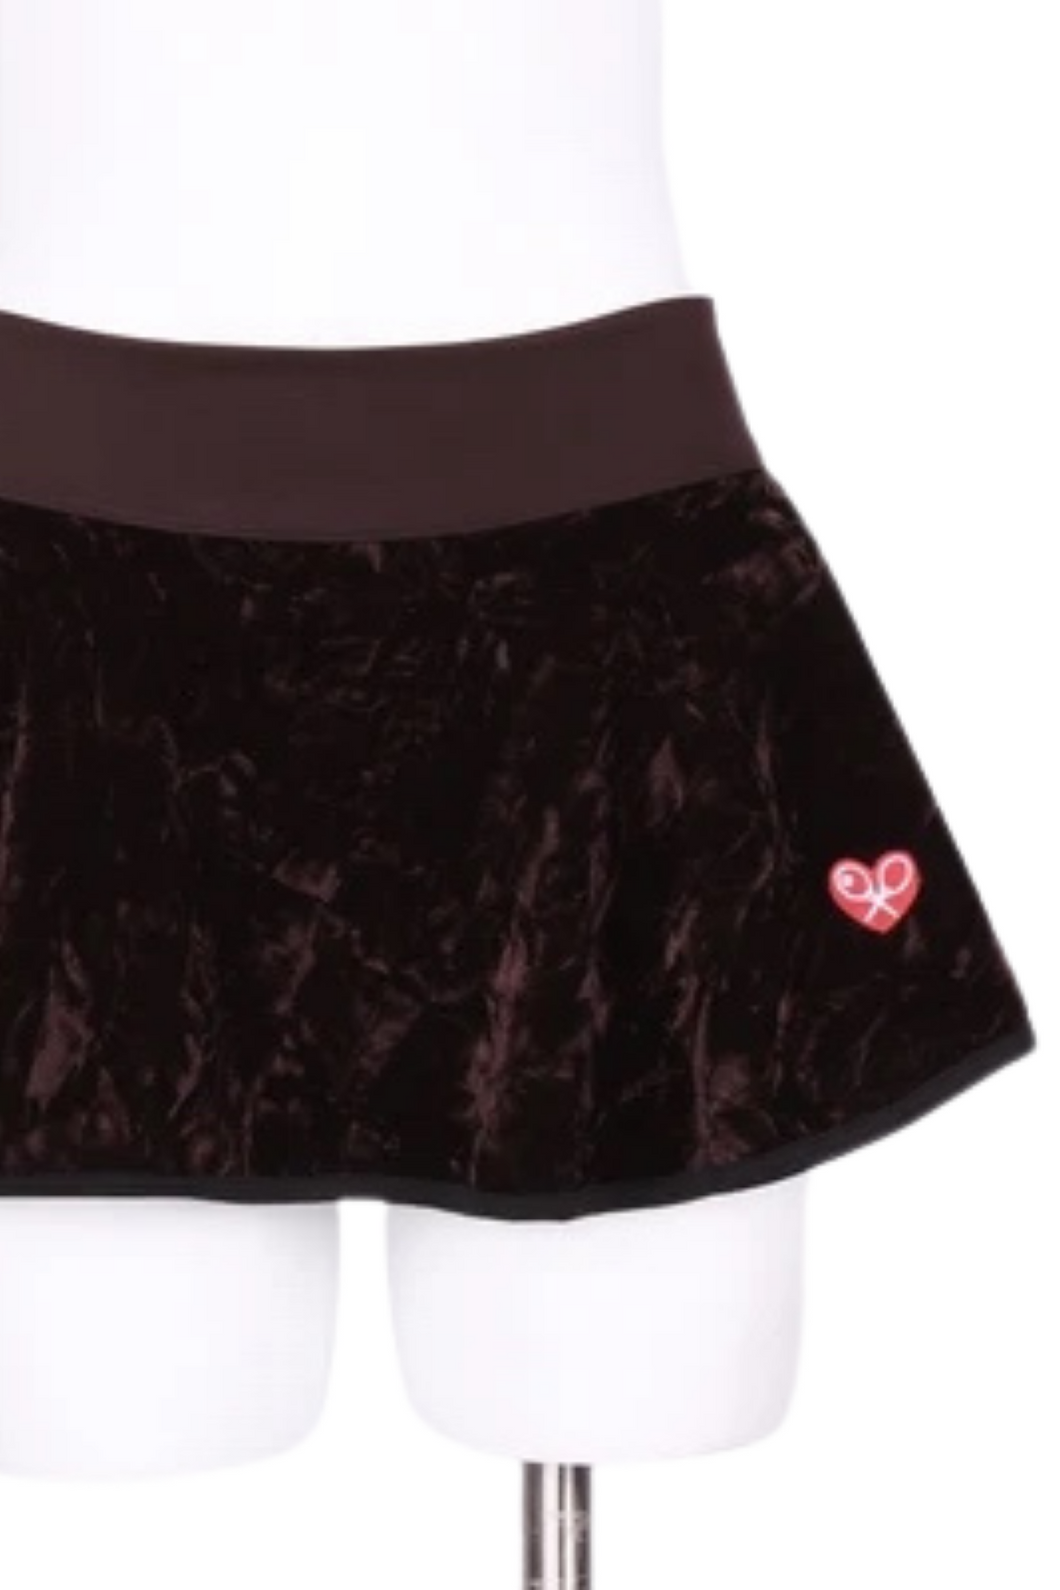 Crushed Brown Velvet LOVE “O” Tennis Skirt - I LOVE MY DOUBLES PARTNER!!!